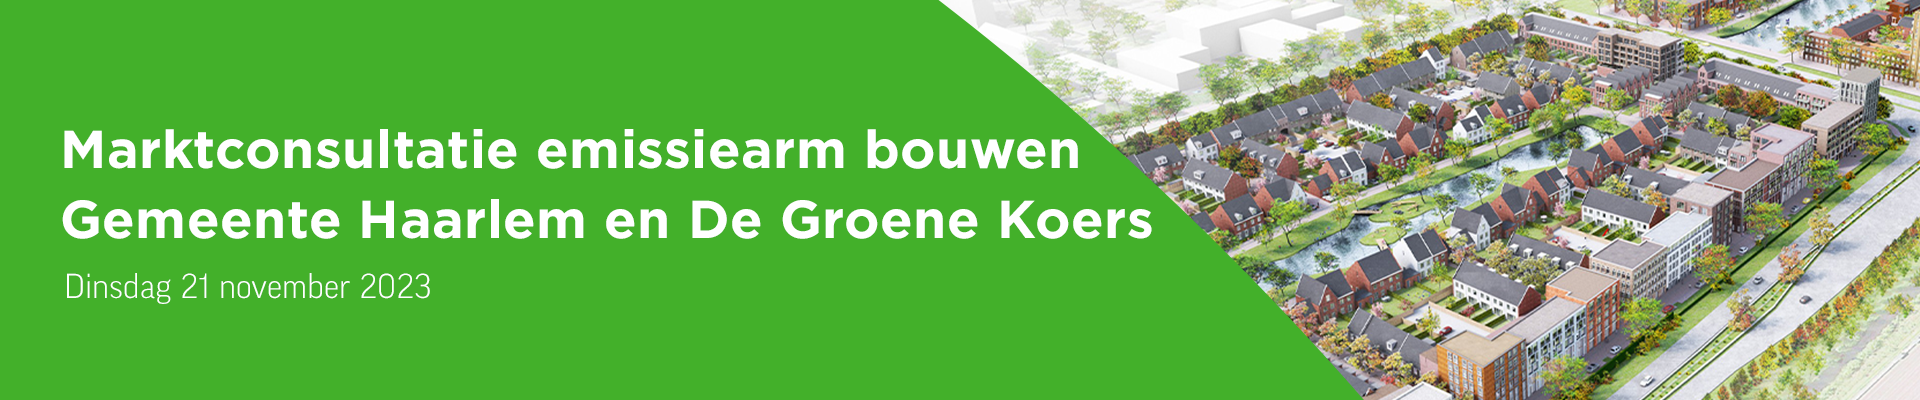 Marktconsultatie emissiearm bouwen Gemeente Haarlem en De Groene Koers